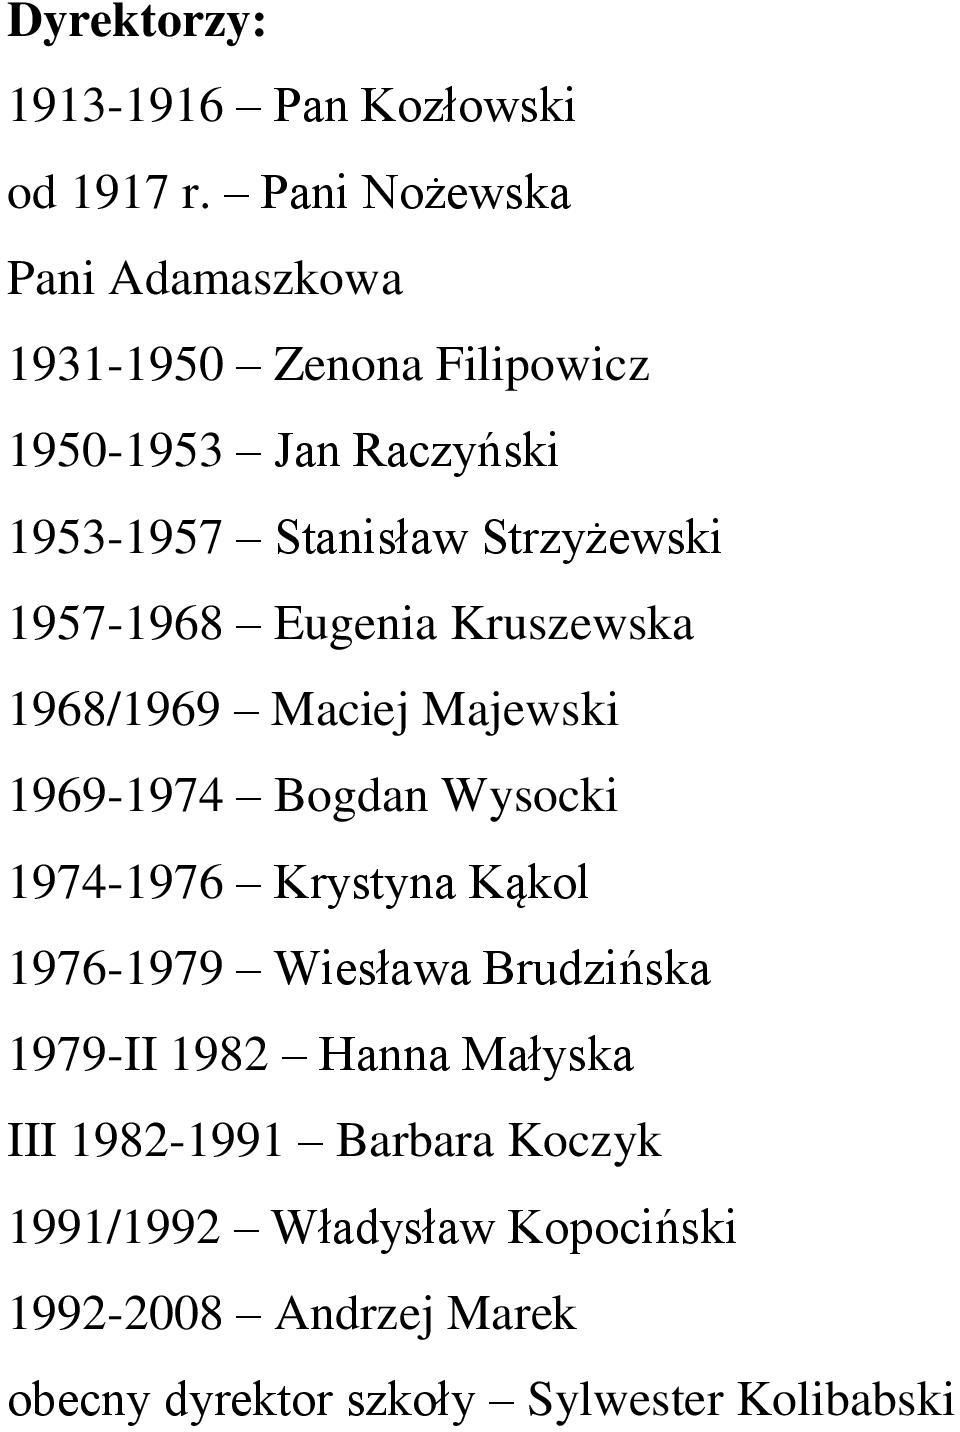 Strzyżewski 1957-1968 Eugenia Kruszewska 1968/1969 Maciej Majewski 1969-1974 Bogdan Wysocki 1974-1976 Krystyna